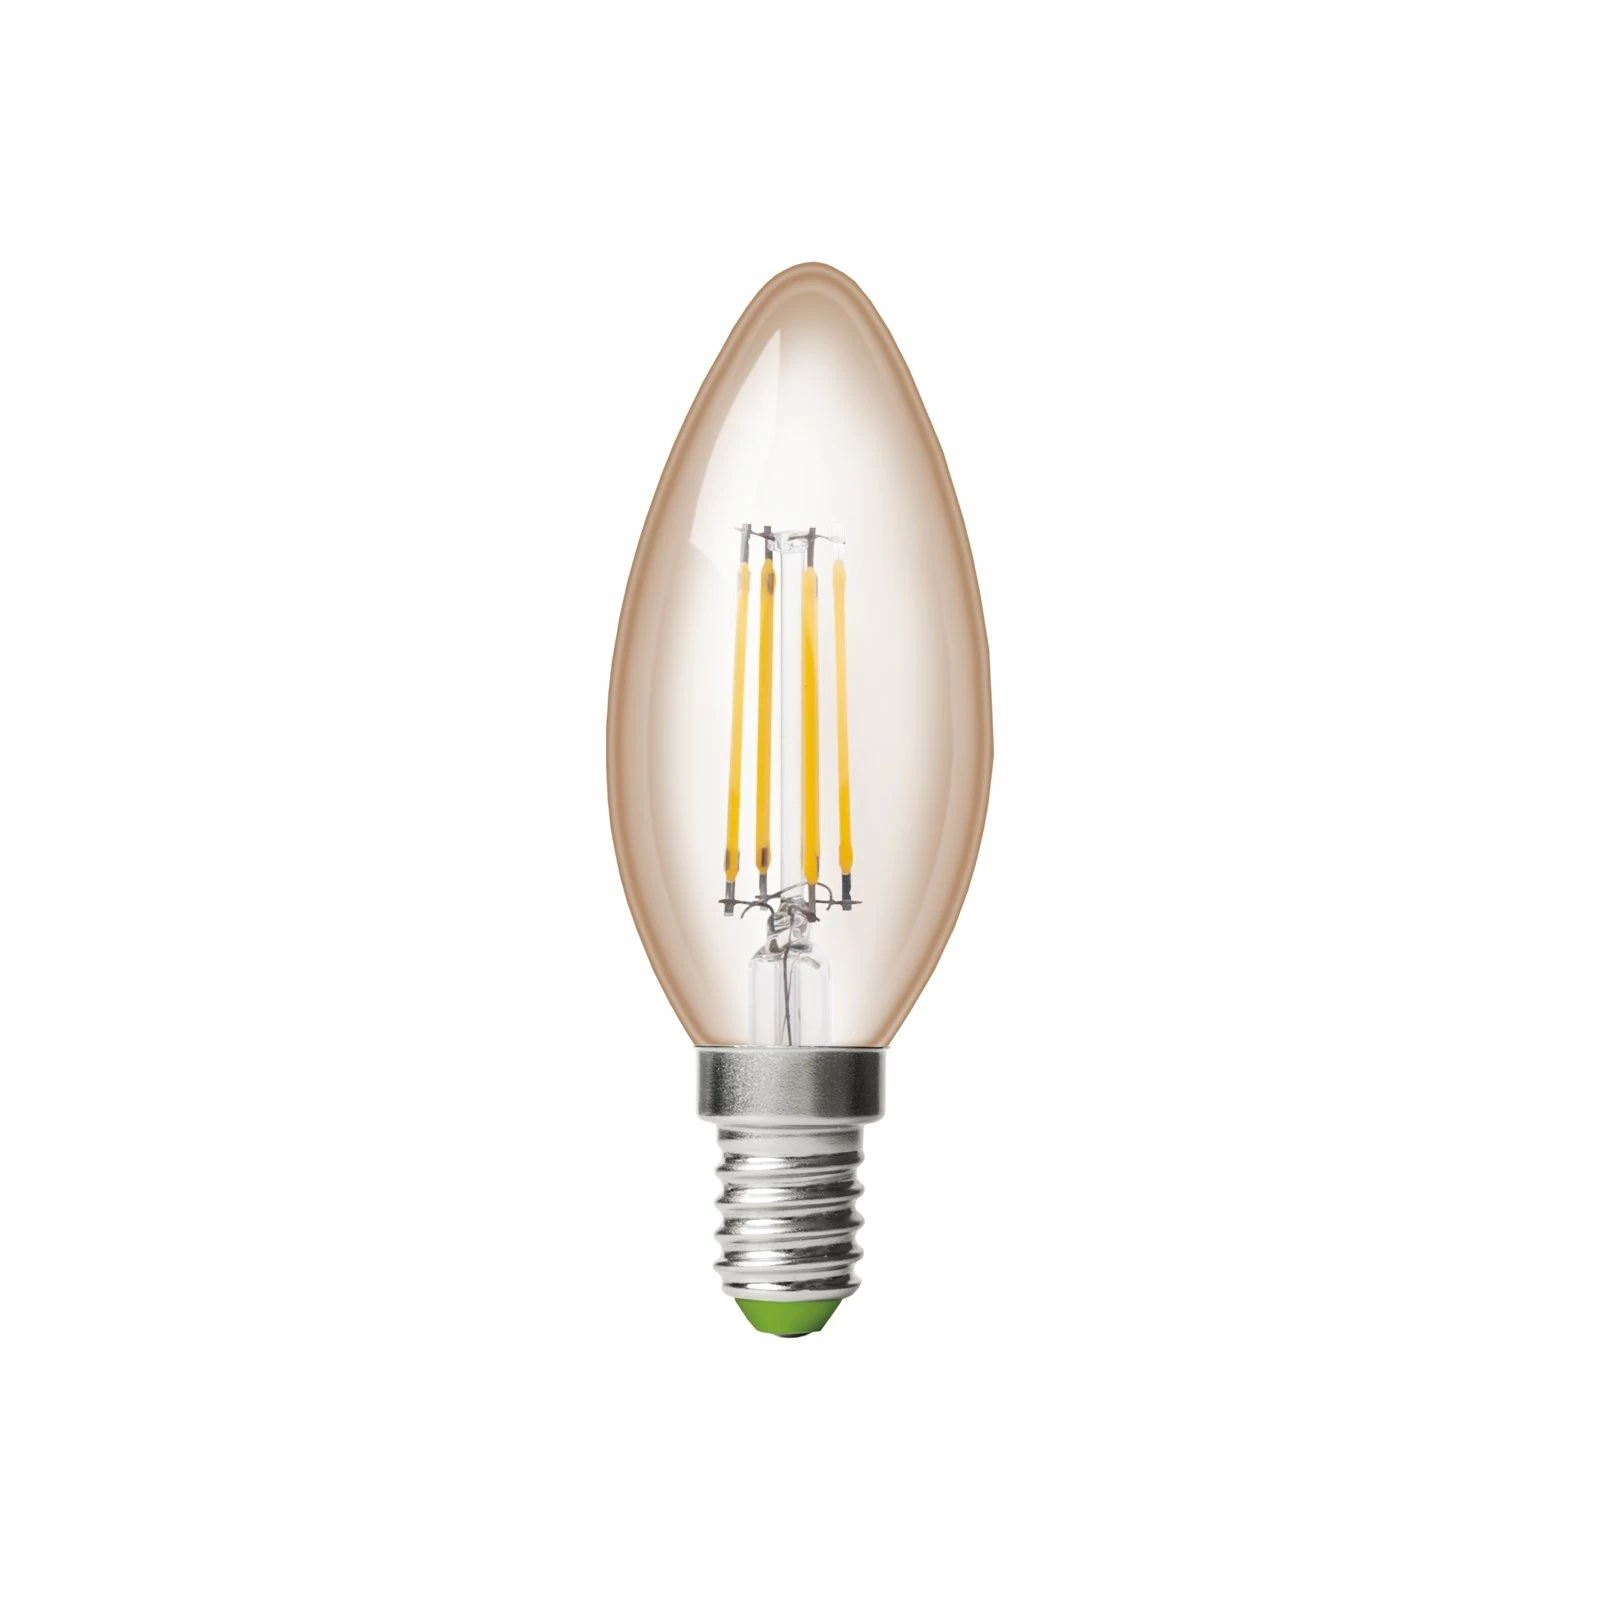 Лампочка Eurolamp LED CL 6W 620 Lm E14 3000K deco 2шт (MLP-LED-CL-06143(Amber)) изображение 2